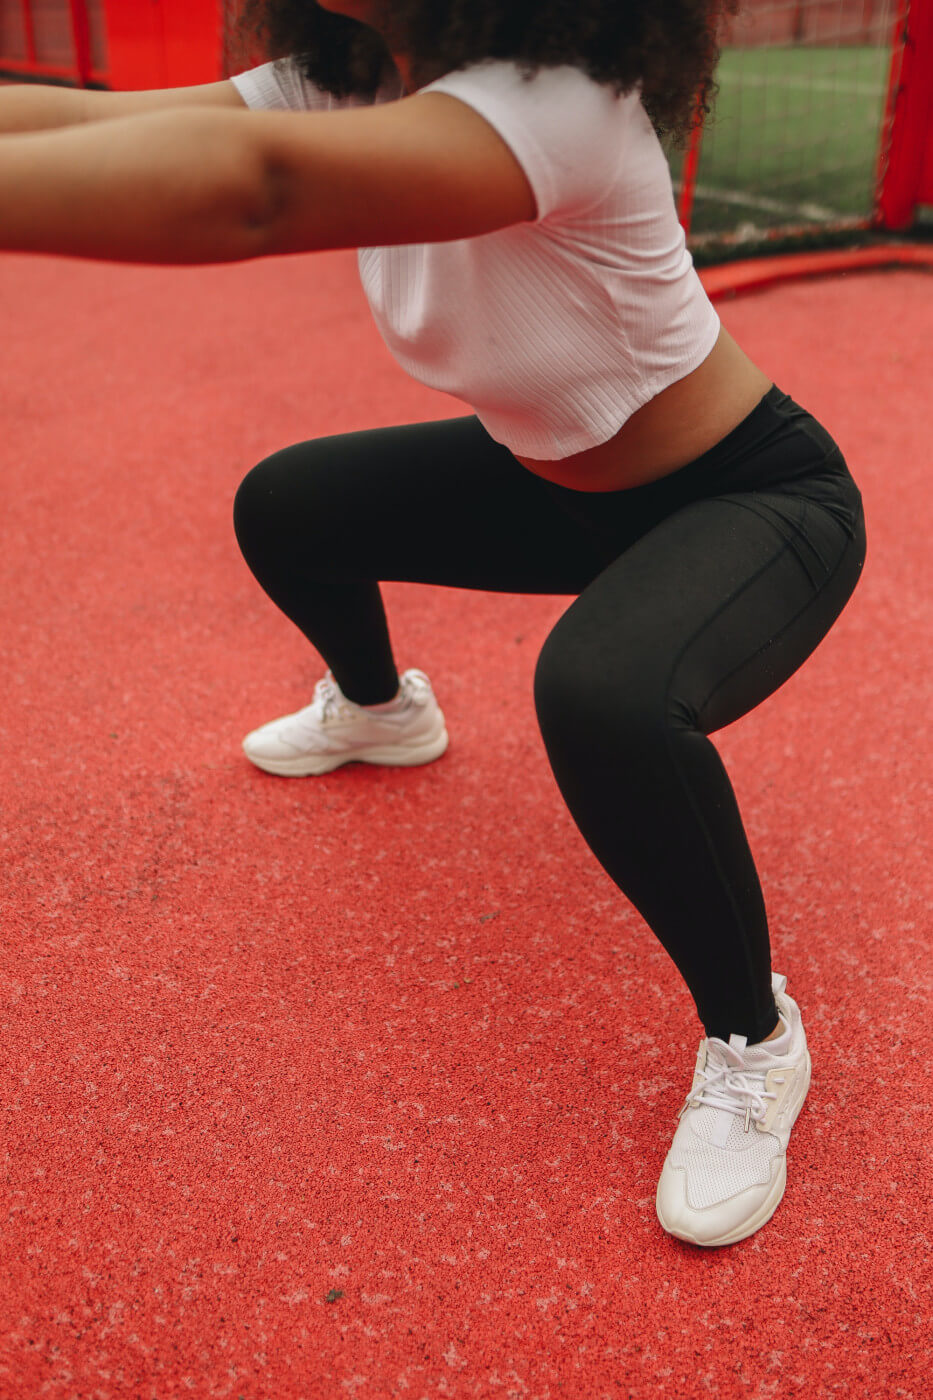  kegel exercises to prevent weak pelvic floor